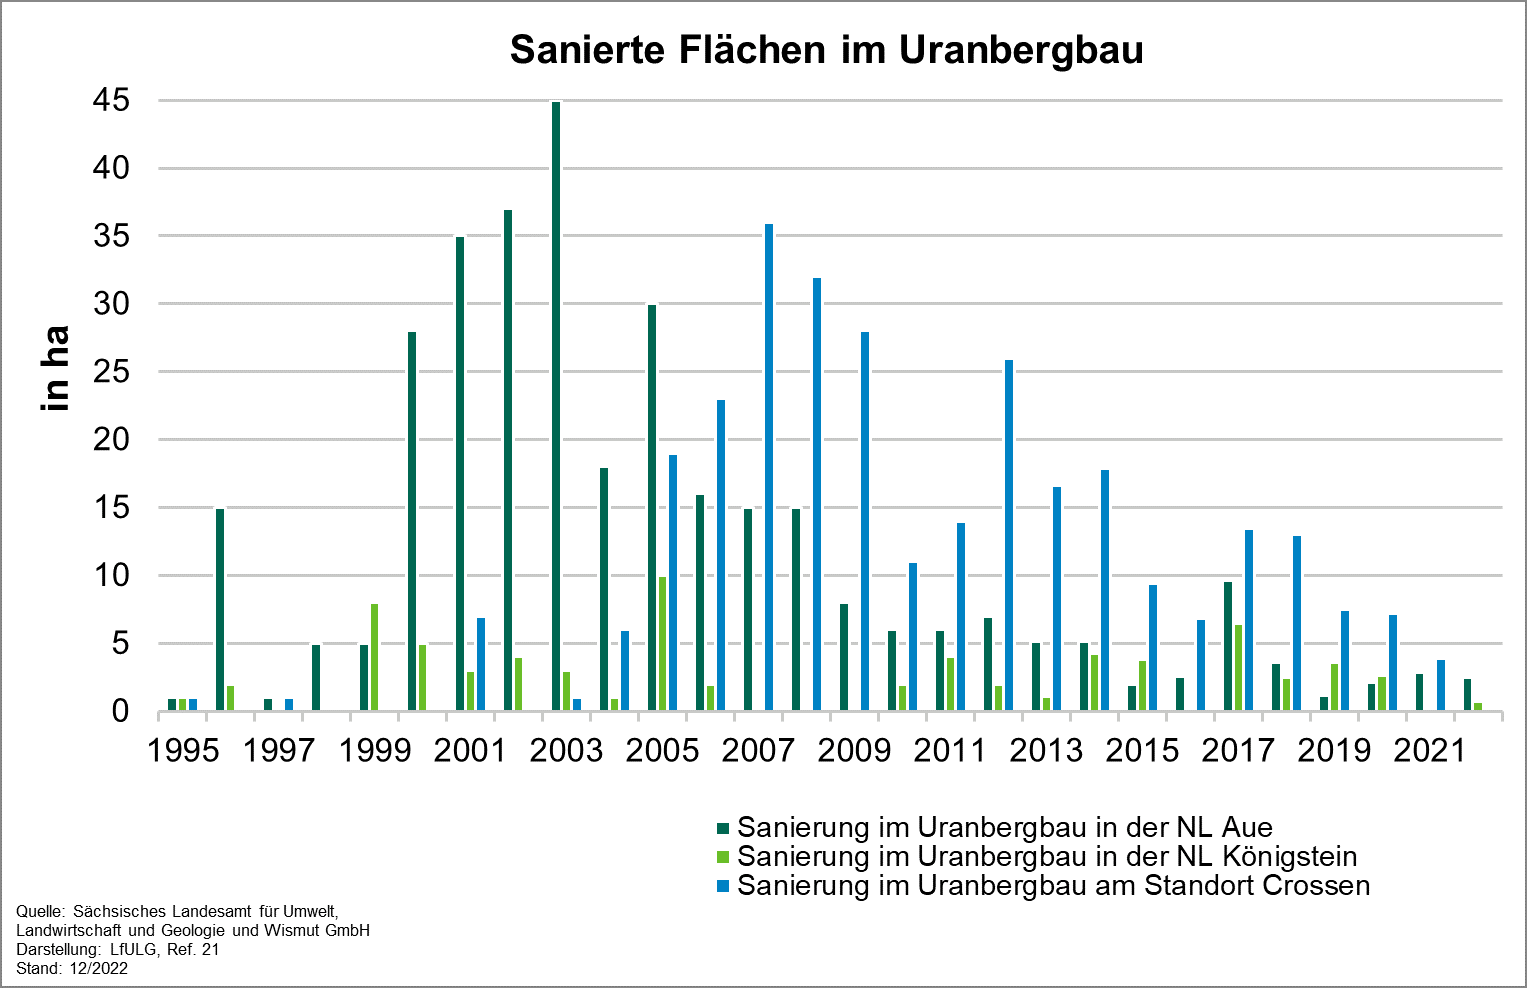 Die Grafik zeigt die Entwicklung des Indikators sanierte Flächen im Uranbergbau für die Jahre 1995 bis 2022. 